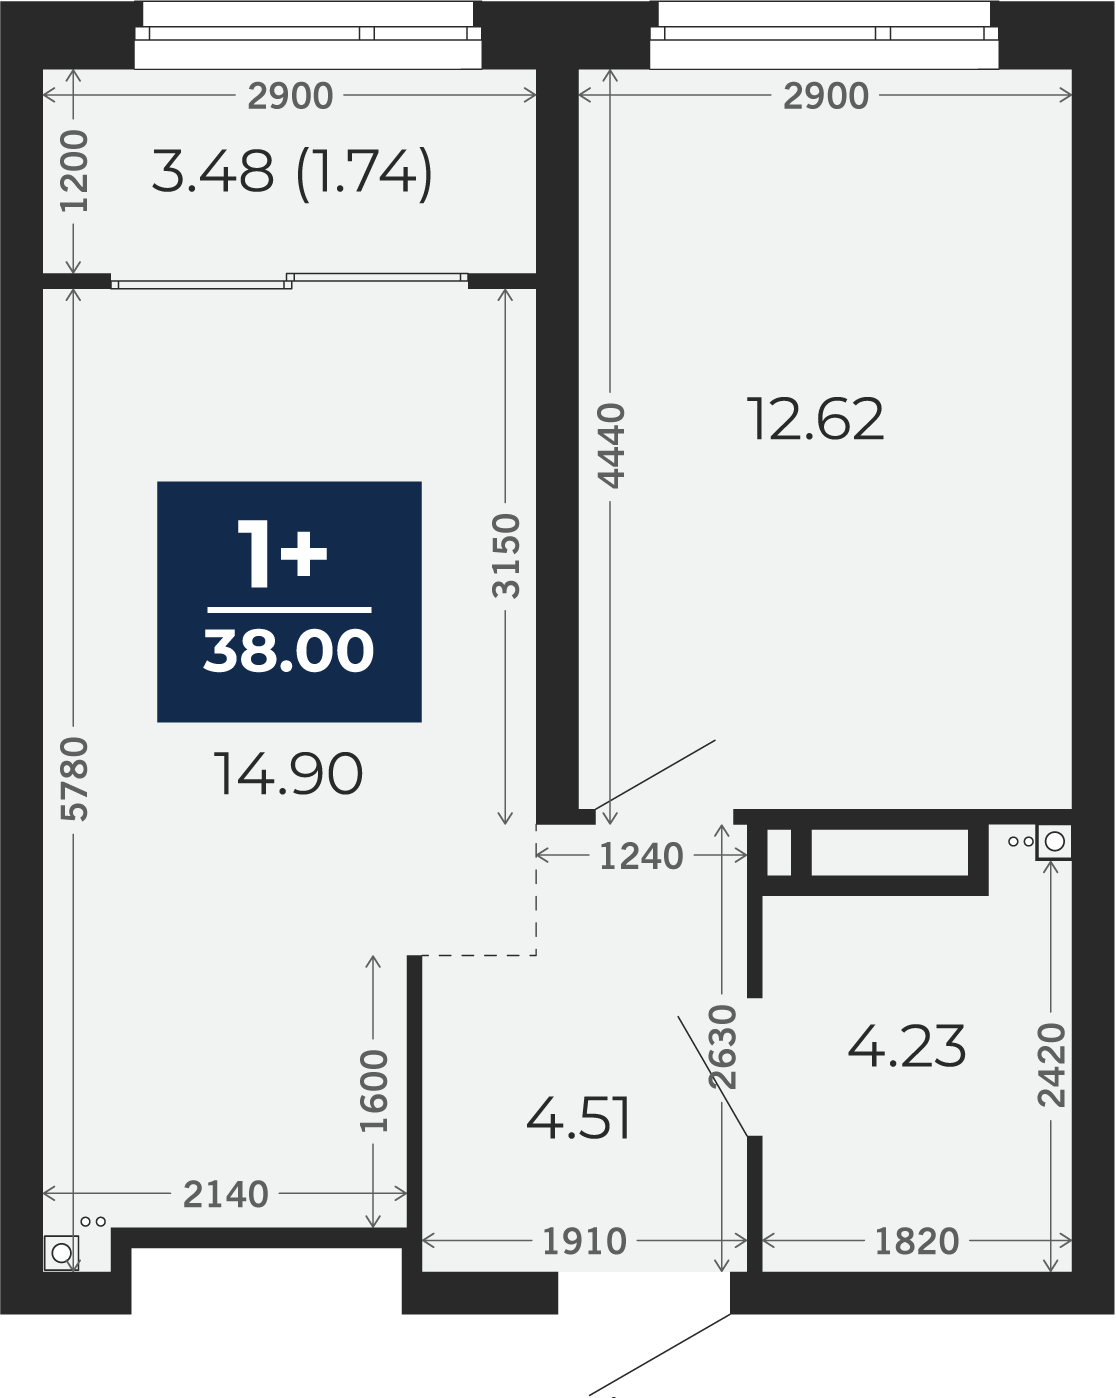 Квартира № 201, 1-комнатная, 38 кв. м, 10 этаж